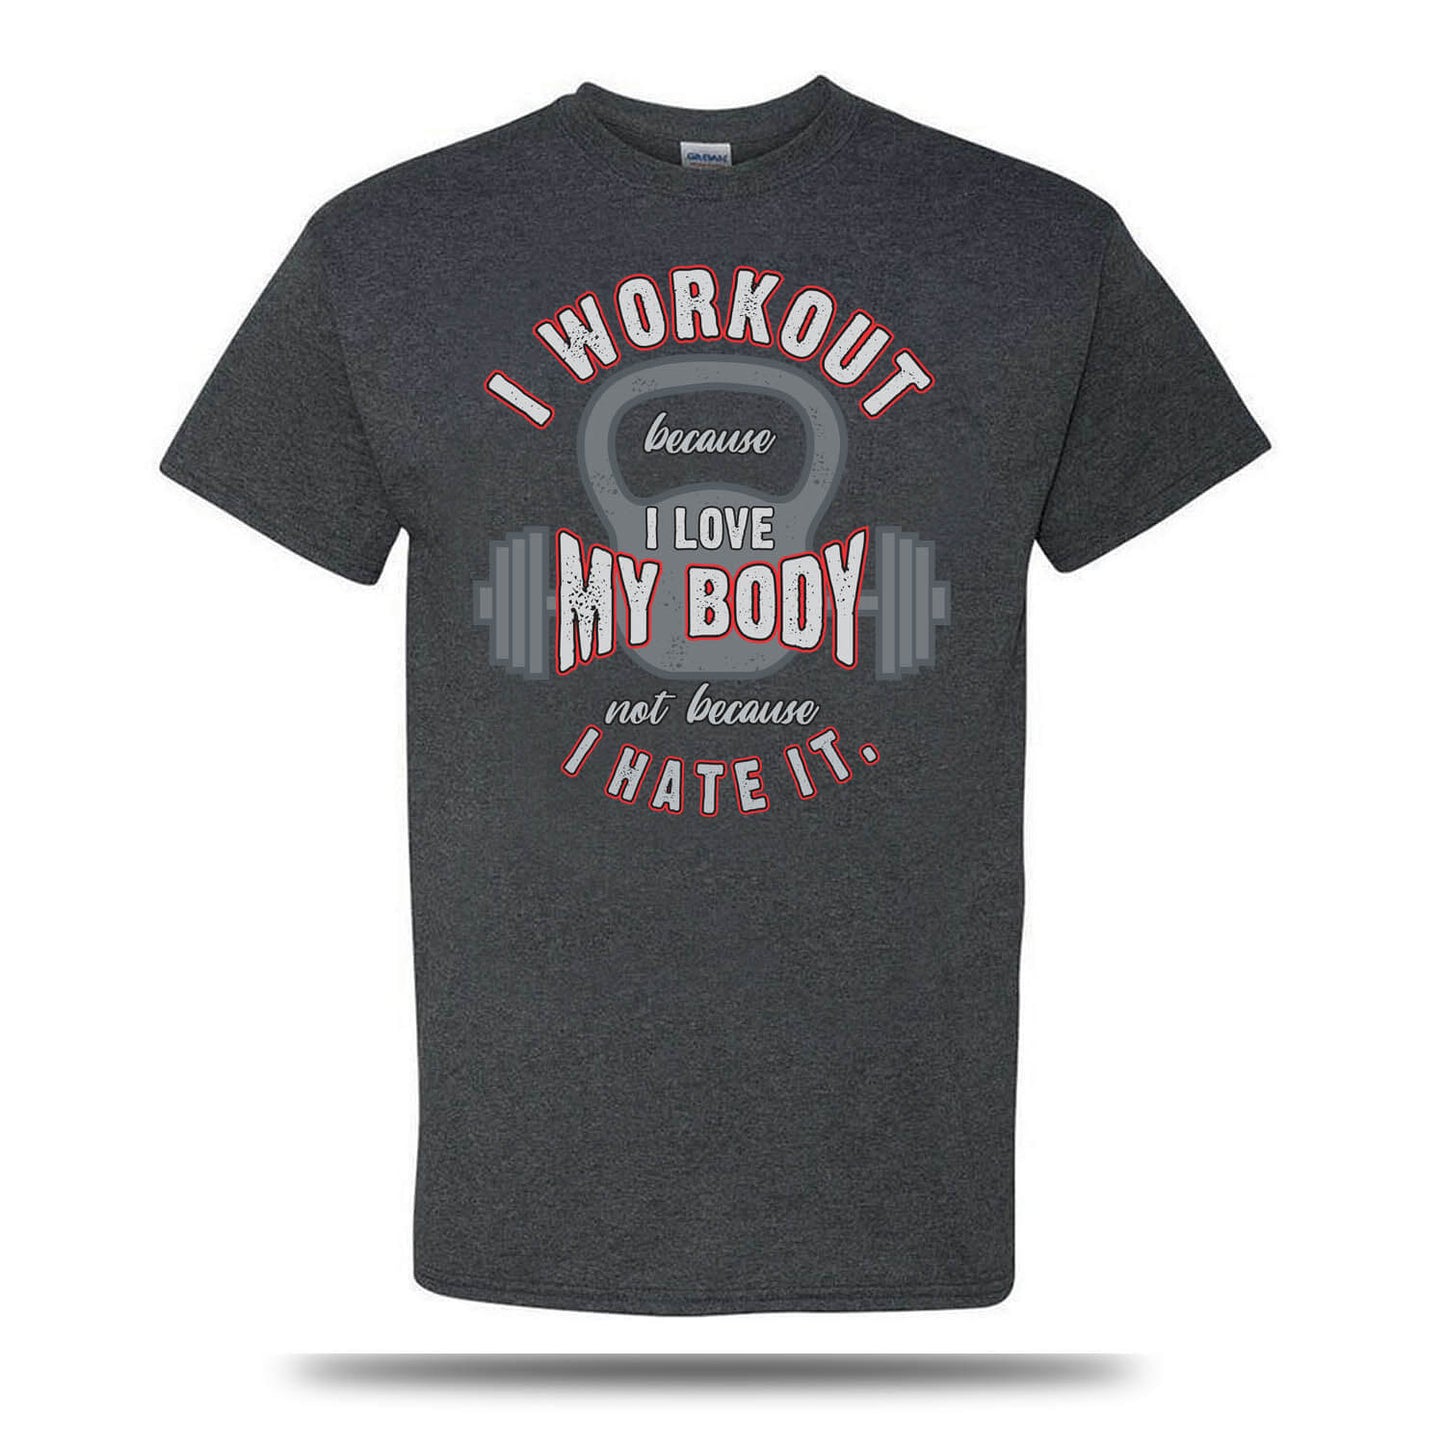 Ich trainiere, weil ich meinen Körper liebe 